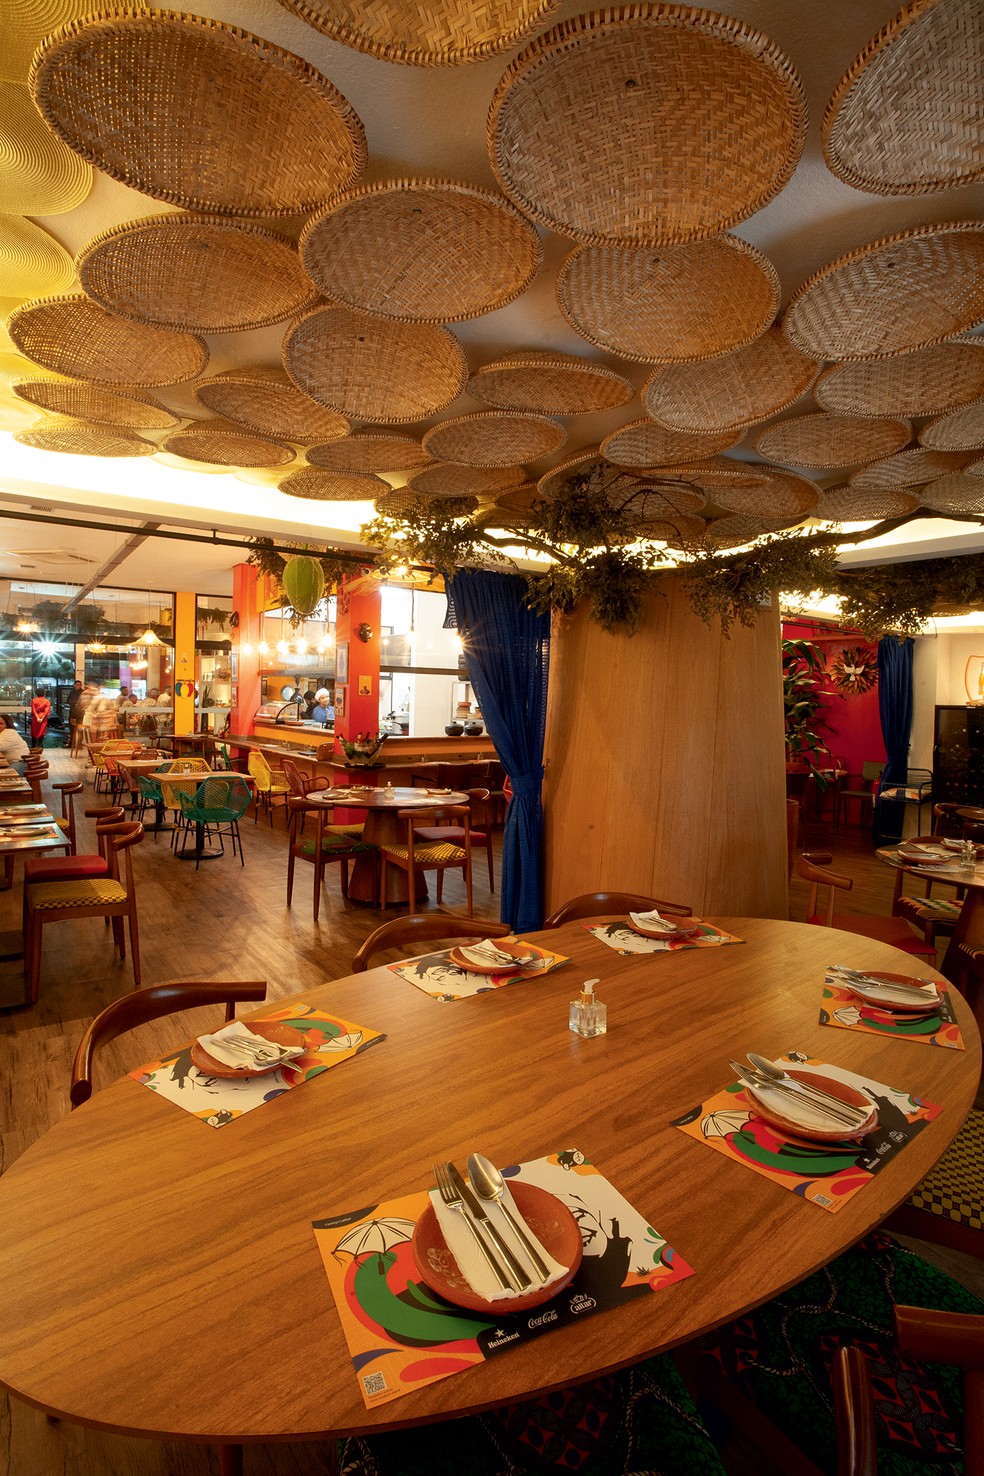 O salão do restaurante na capital paulista conta com paredes coloridas, elementos naturais e itens de artesanato — Foto: Fernando Morais / Editora Globo